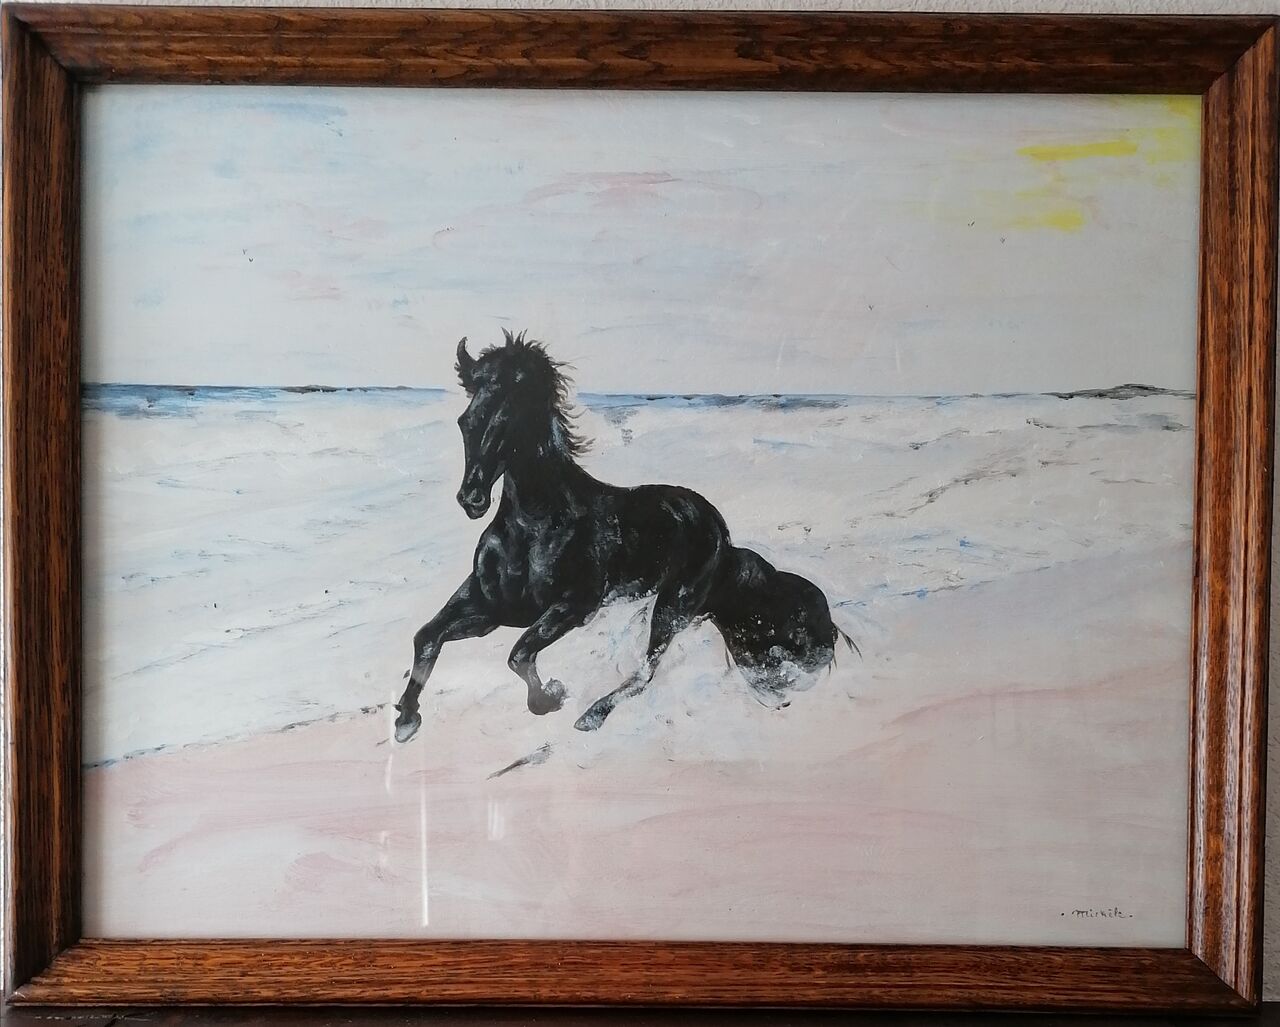 Michele martin le cheval et la mer.